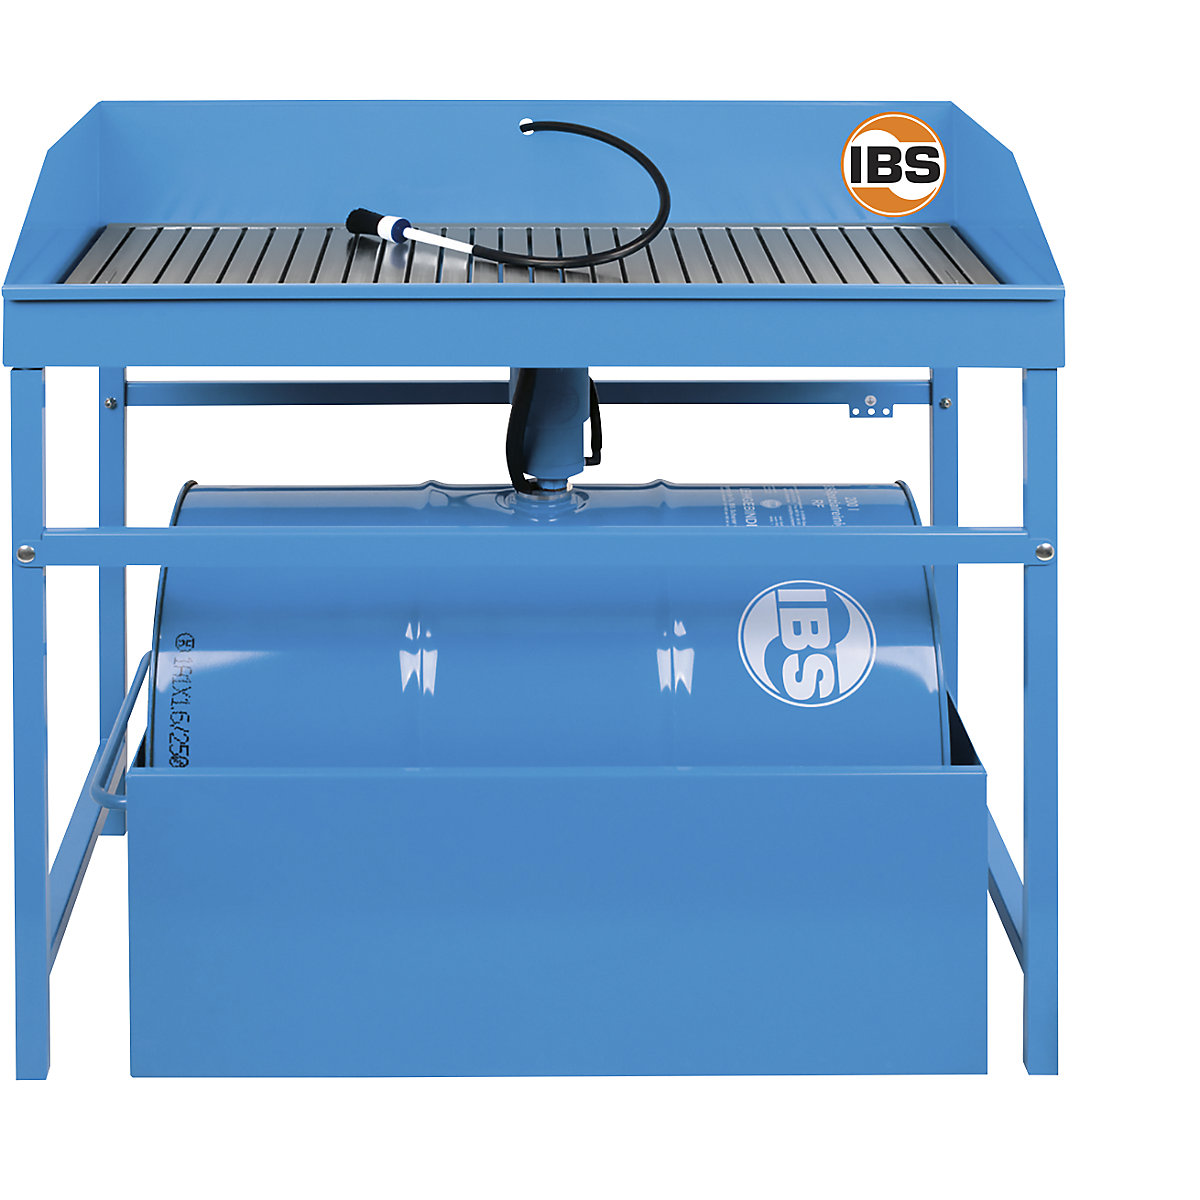 Profesionalni uređaj za čišćenje sitnih dijelova – IBS Scherer, komplet s posebnim sredstvom za čišćenje volumena 200 l i prihvatnim koritom, za bačvu volumena 200 l